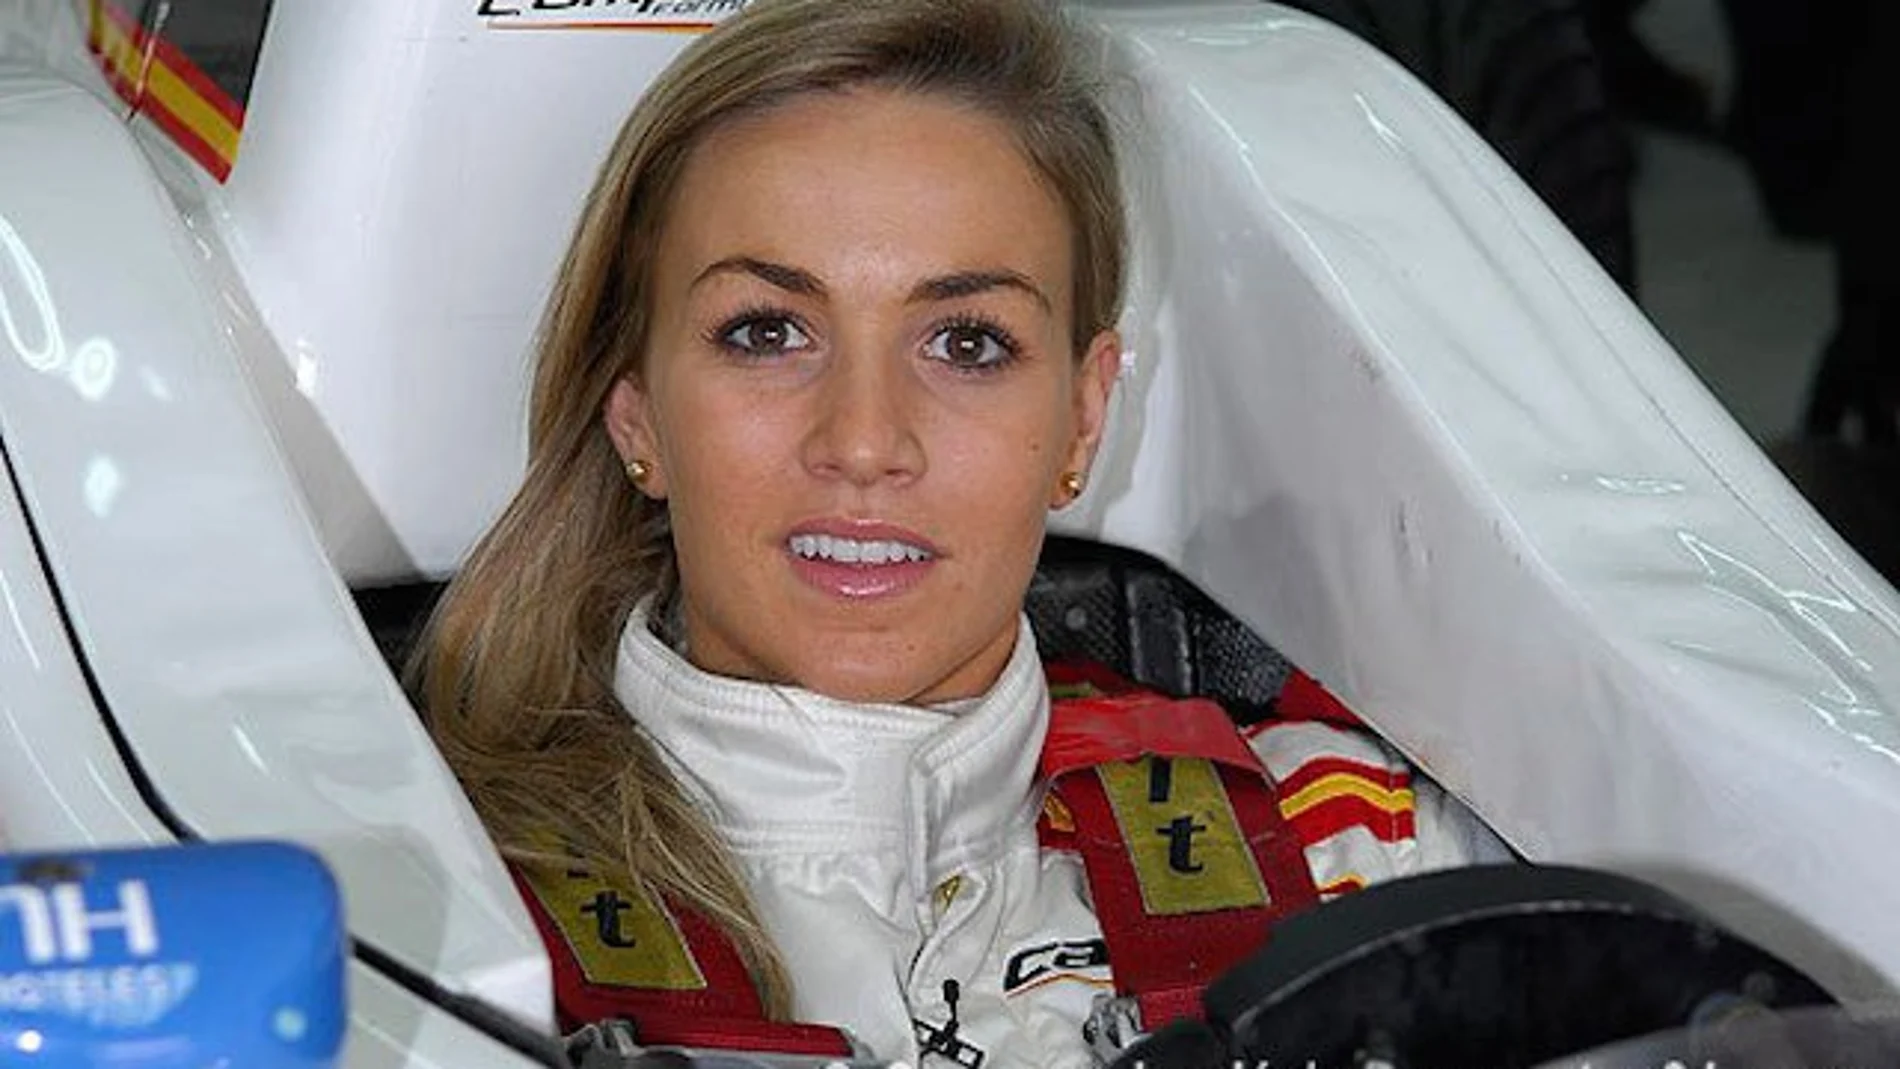 La española Carmen Jordá, junto a Susie Wolff, son pilotos de desarrollo, pero no compiten